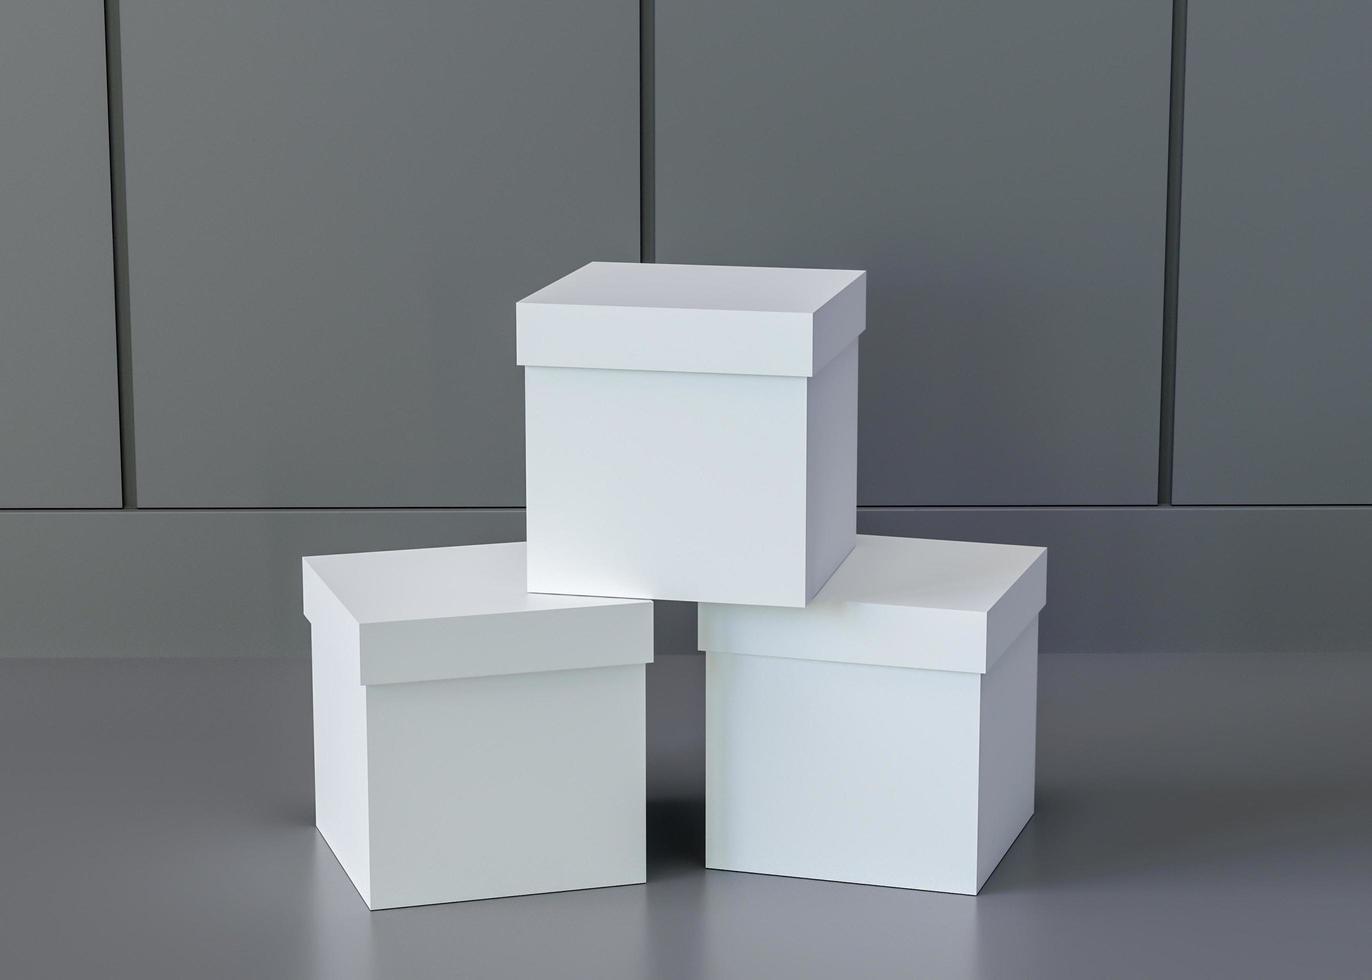 3 Boxen in Reihe im Raum aufgestellt, Farbe Marine foto